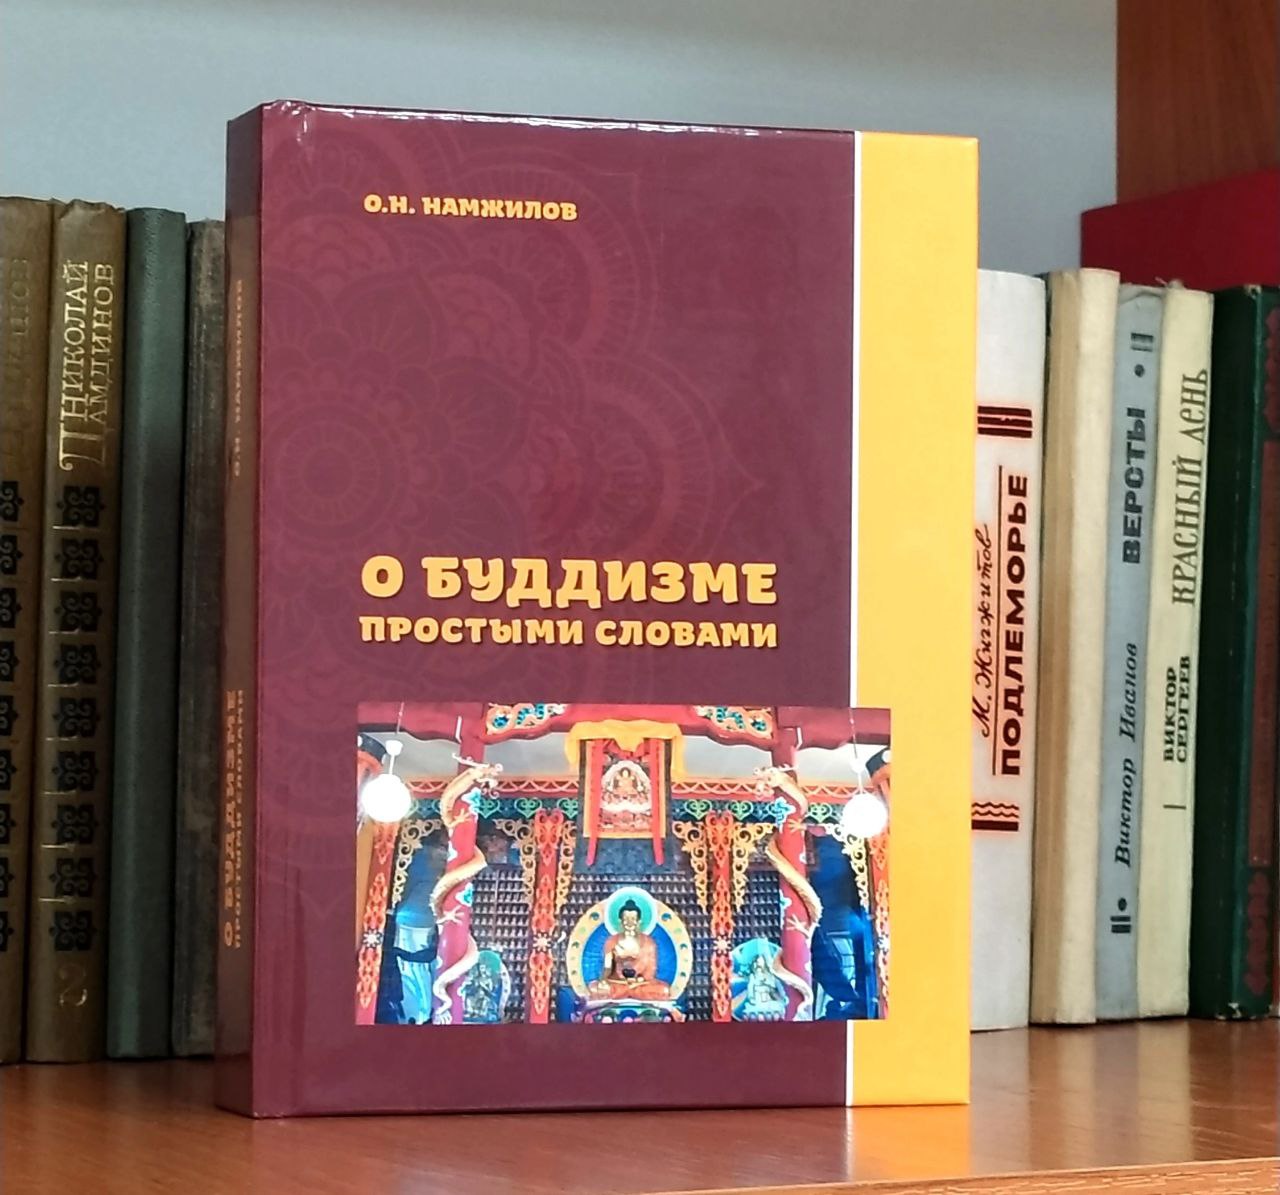 Фото В Бурятии лама из Курумканского района издал сборник статей о буддизме